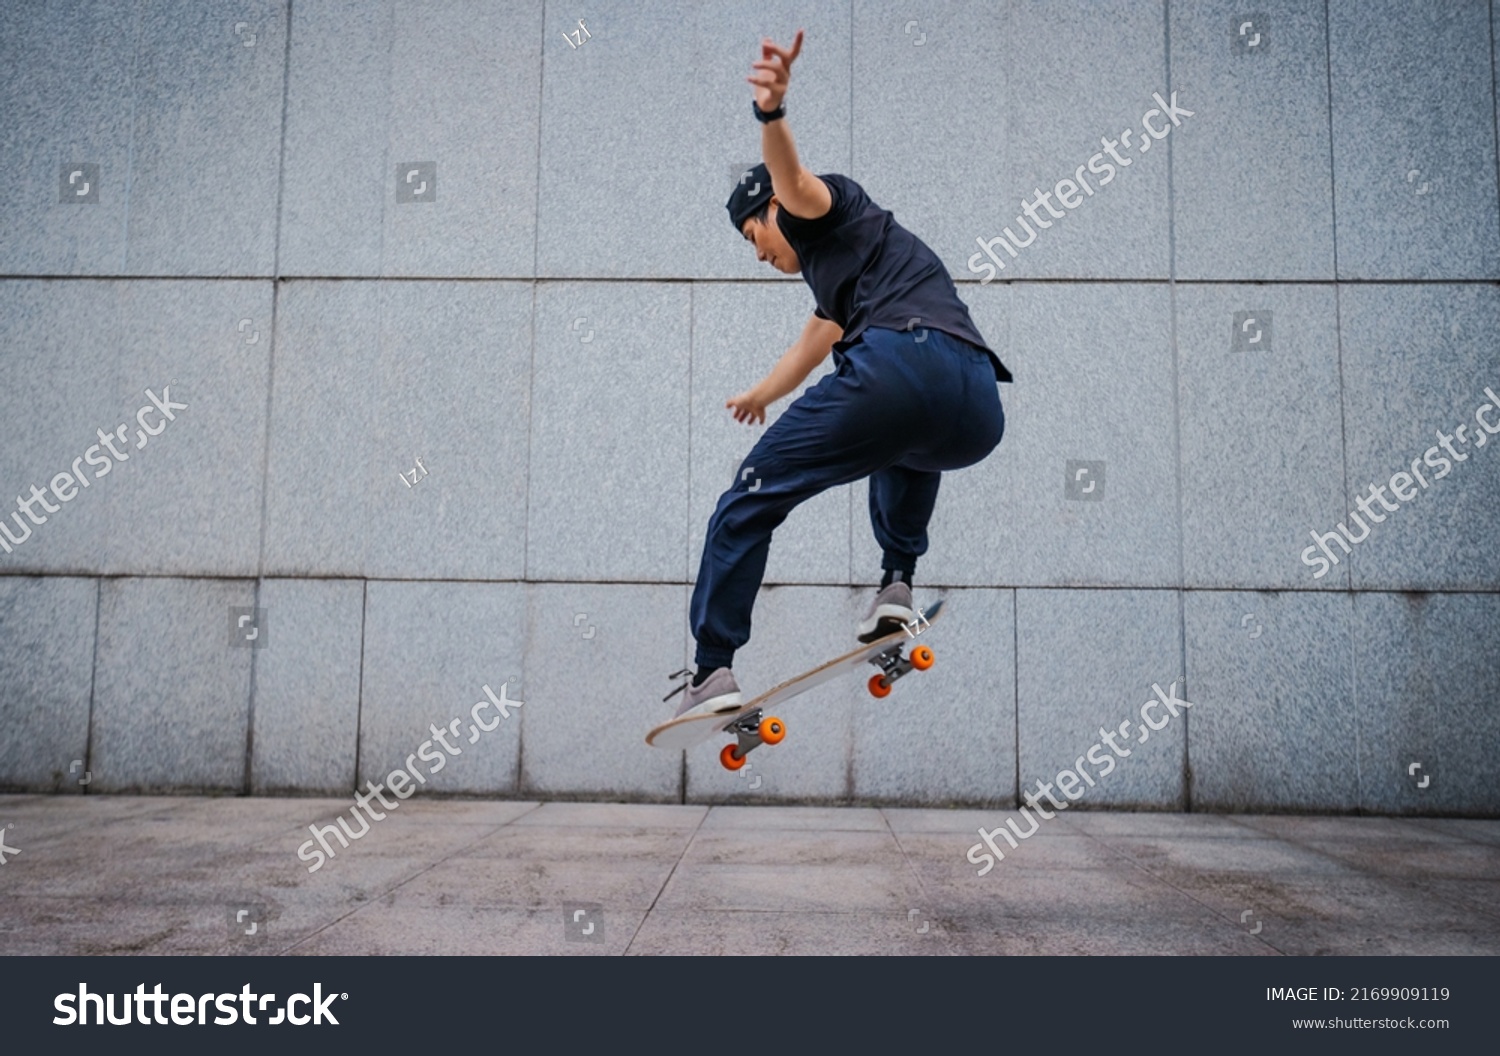 Asian woman skateboarder skateboarding in modern city #2169909119